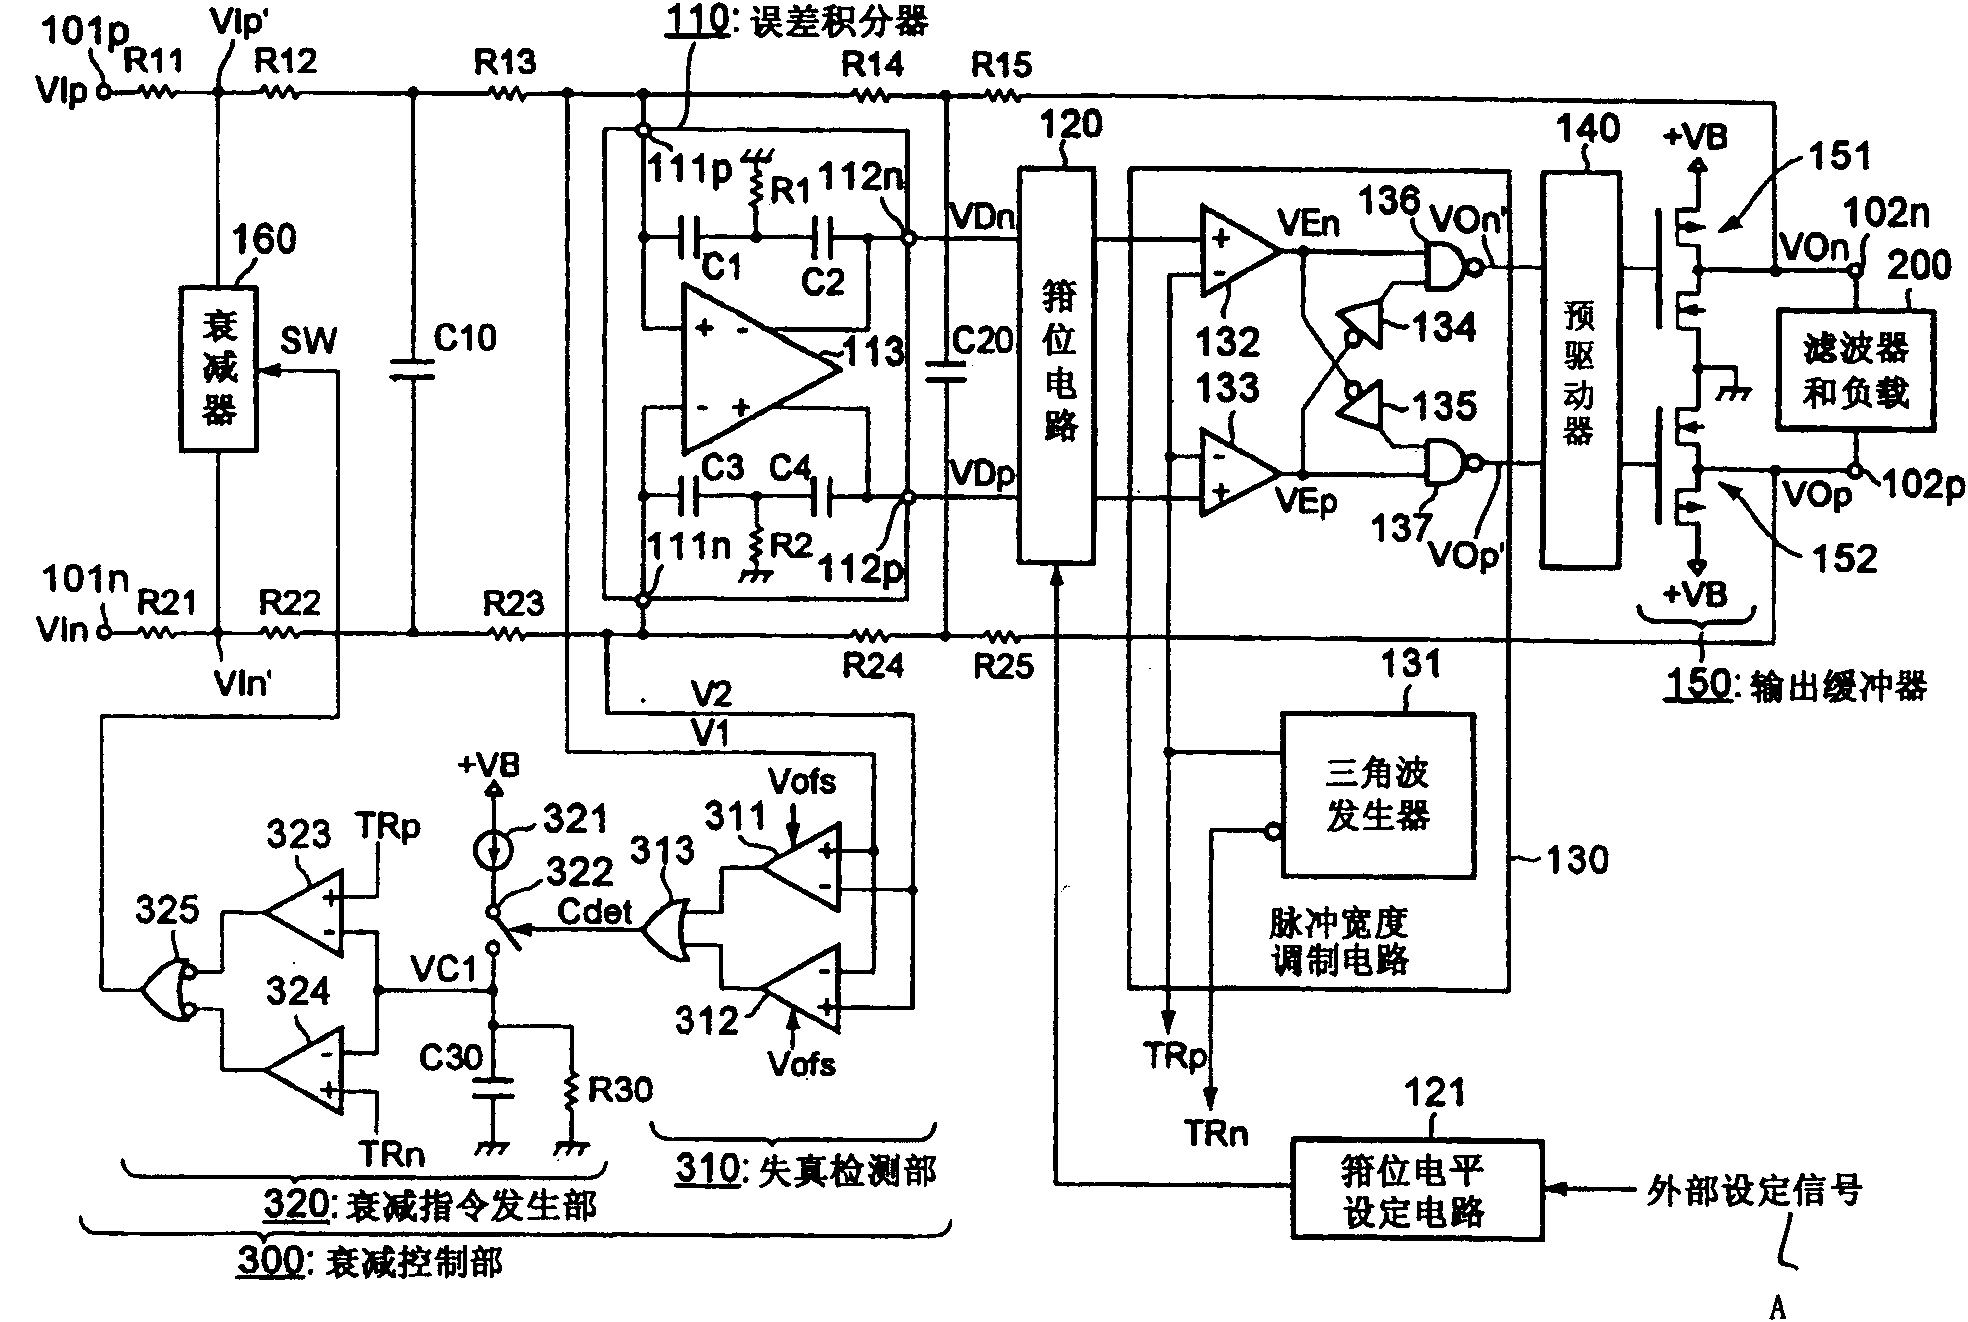 Class-D amplifier